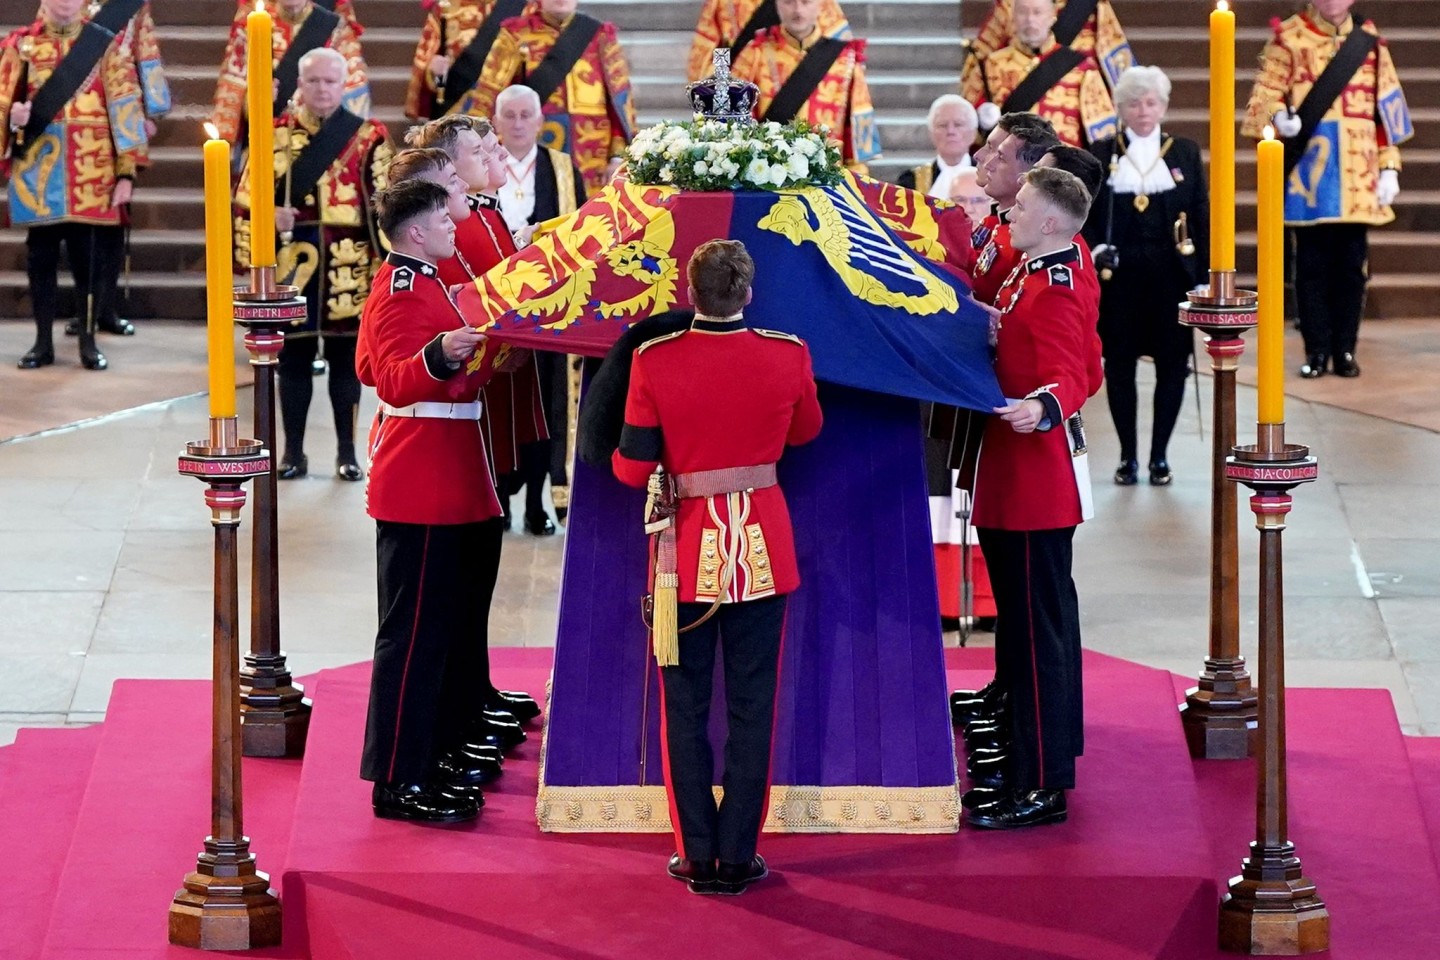 Die Königin wird vier Tage lang in der Westminster Hall aufgebahrt, bevor sie am Montag, dem 19. September, beigesetzt wird.